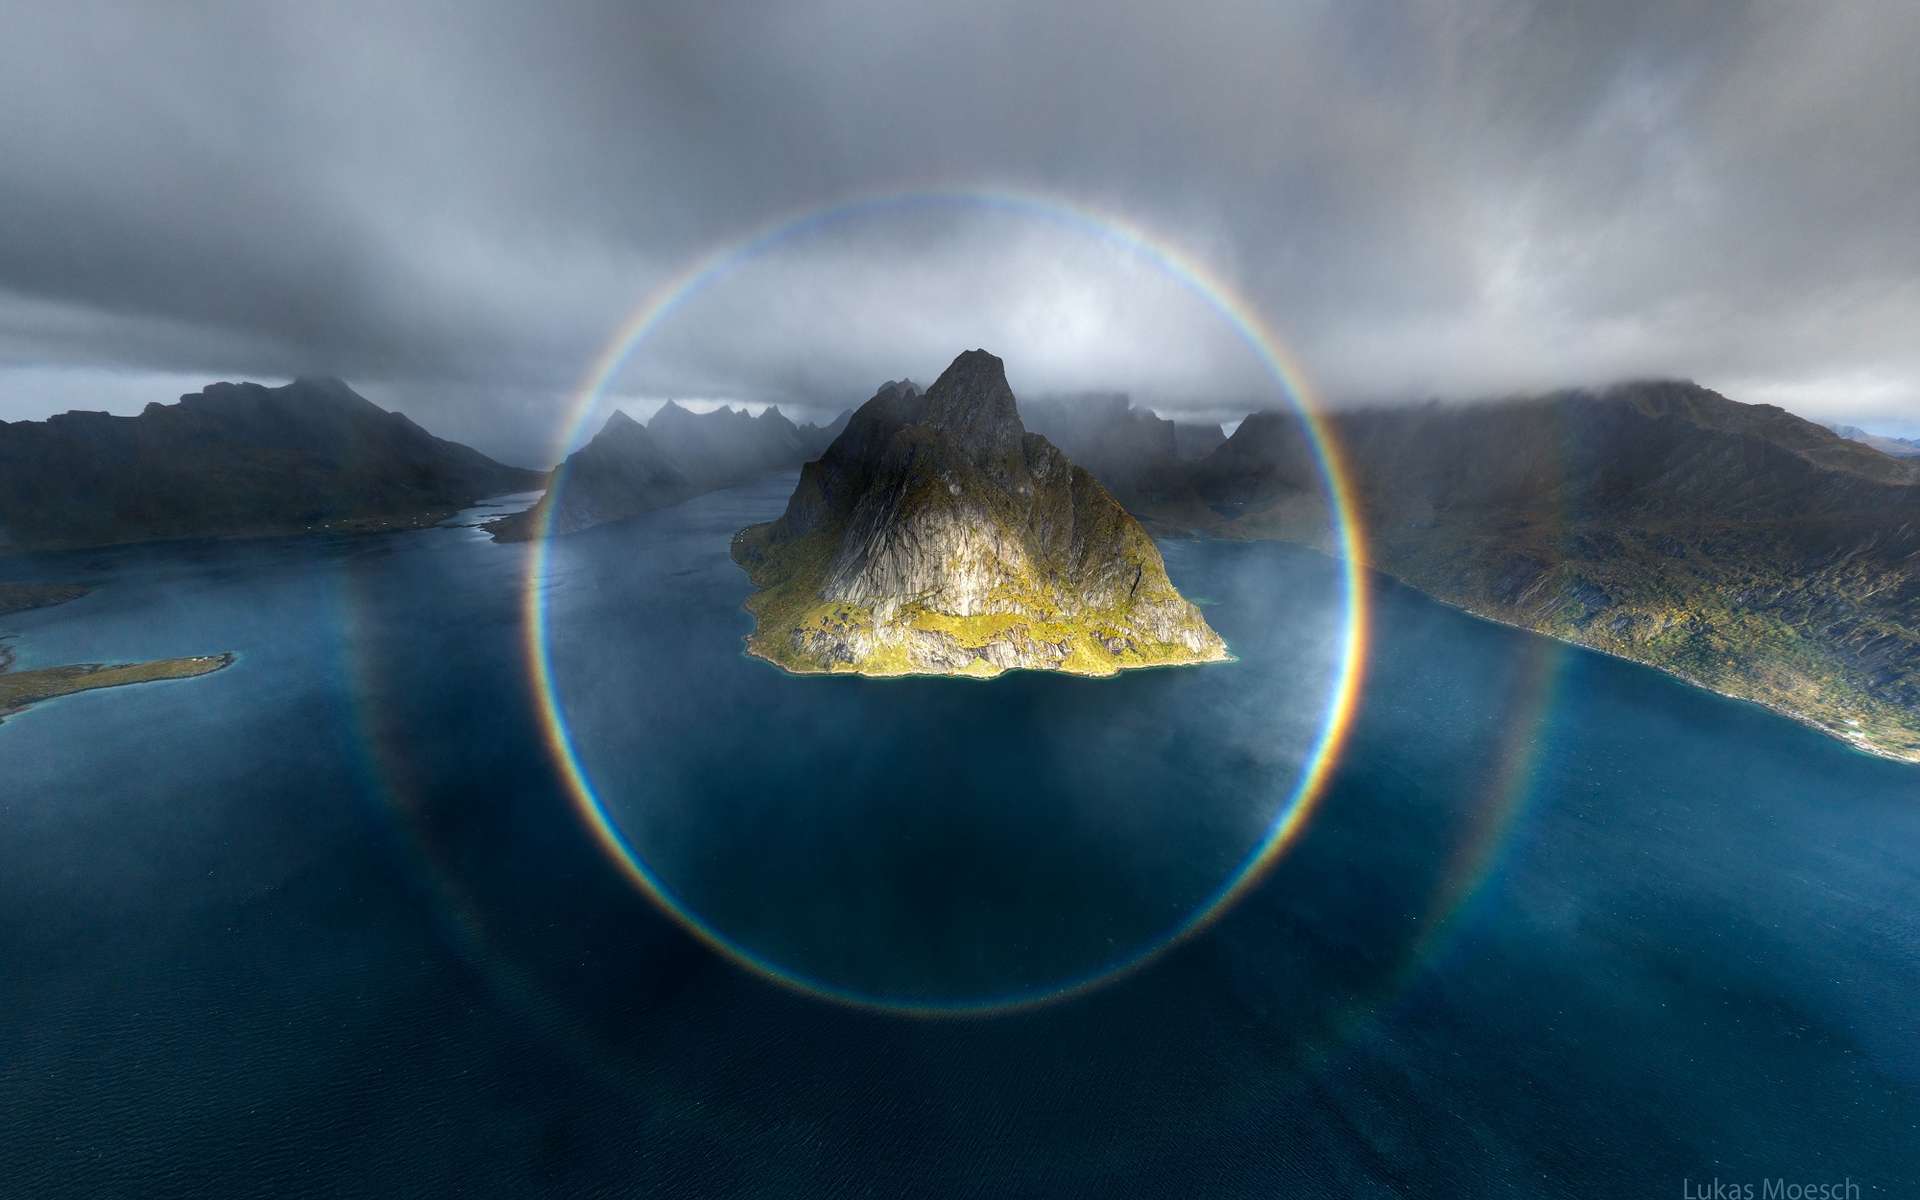 Magnifique : le cercle complet d'un arc-en-ciel photographié en Norvège !